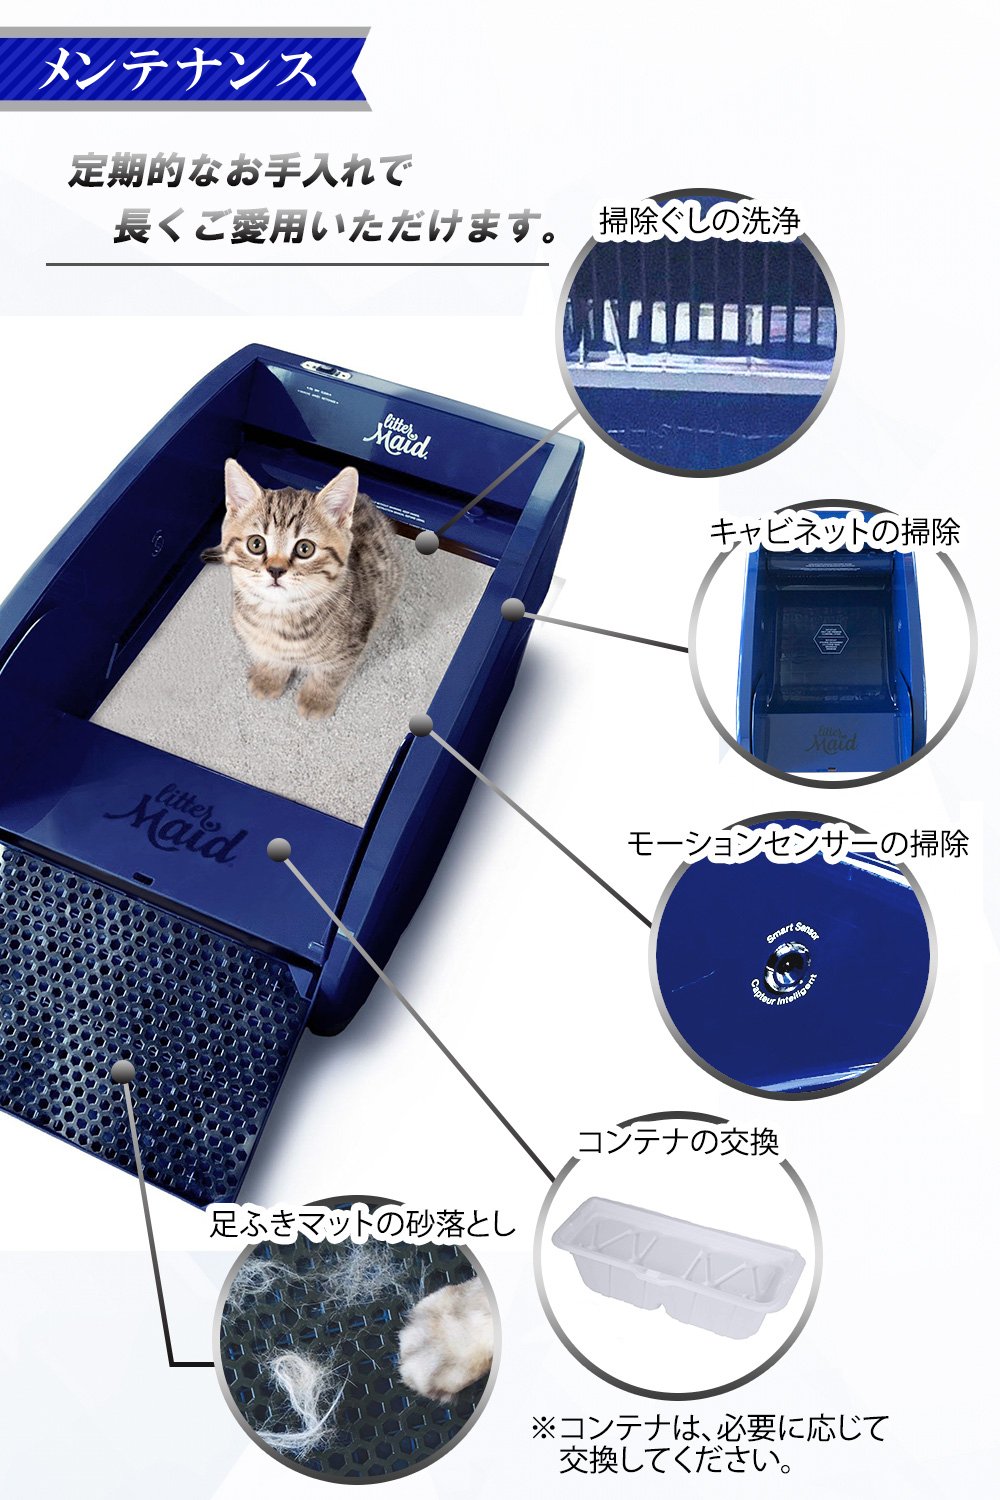 リッターメイド 全自動猫トイレ コンパクト - メンテナンス